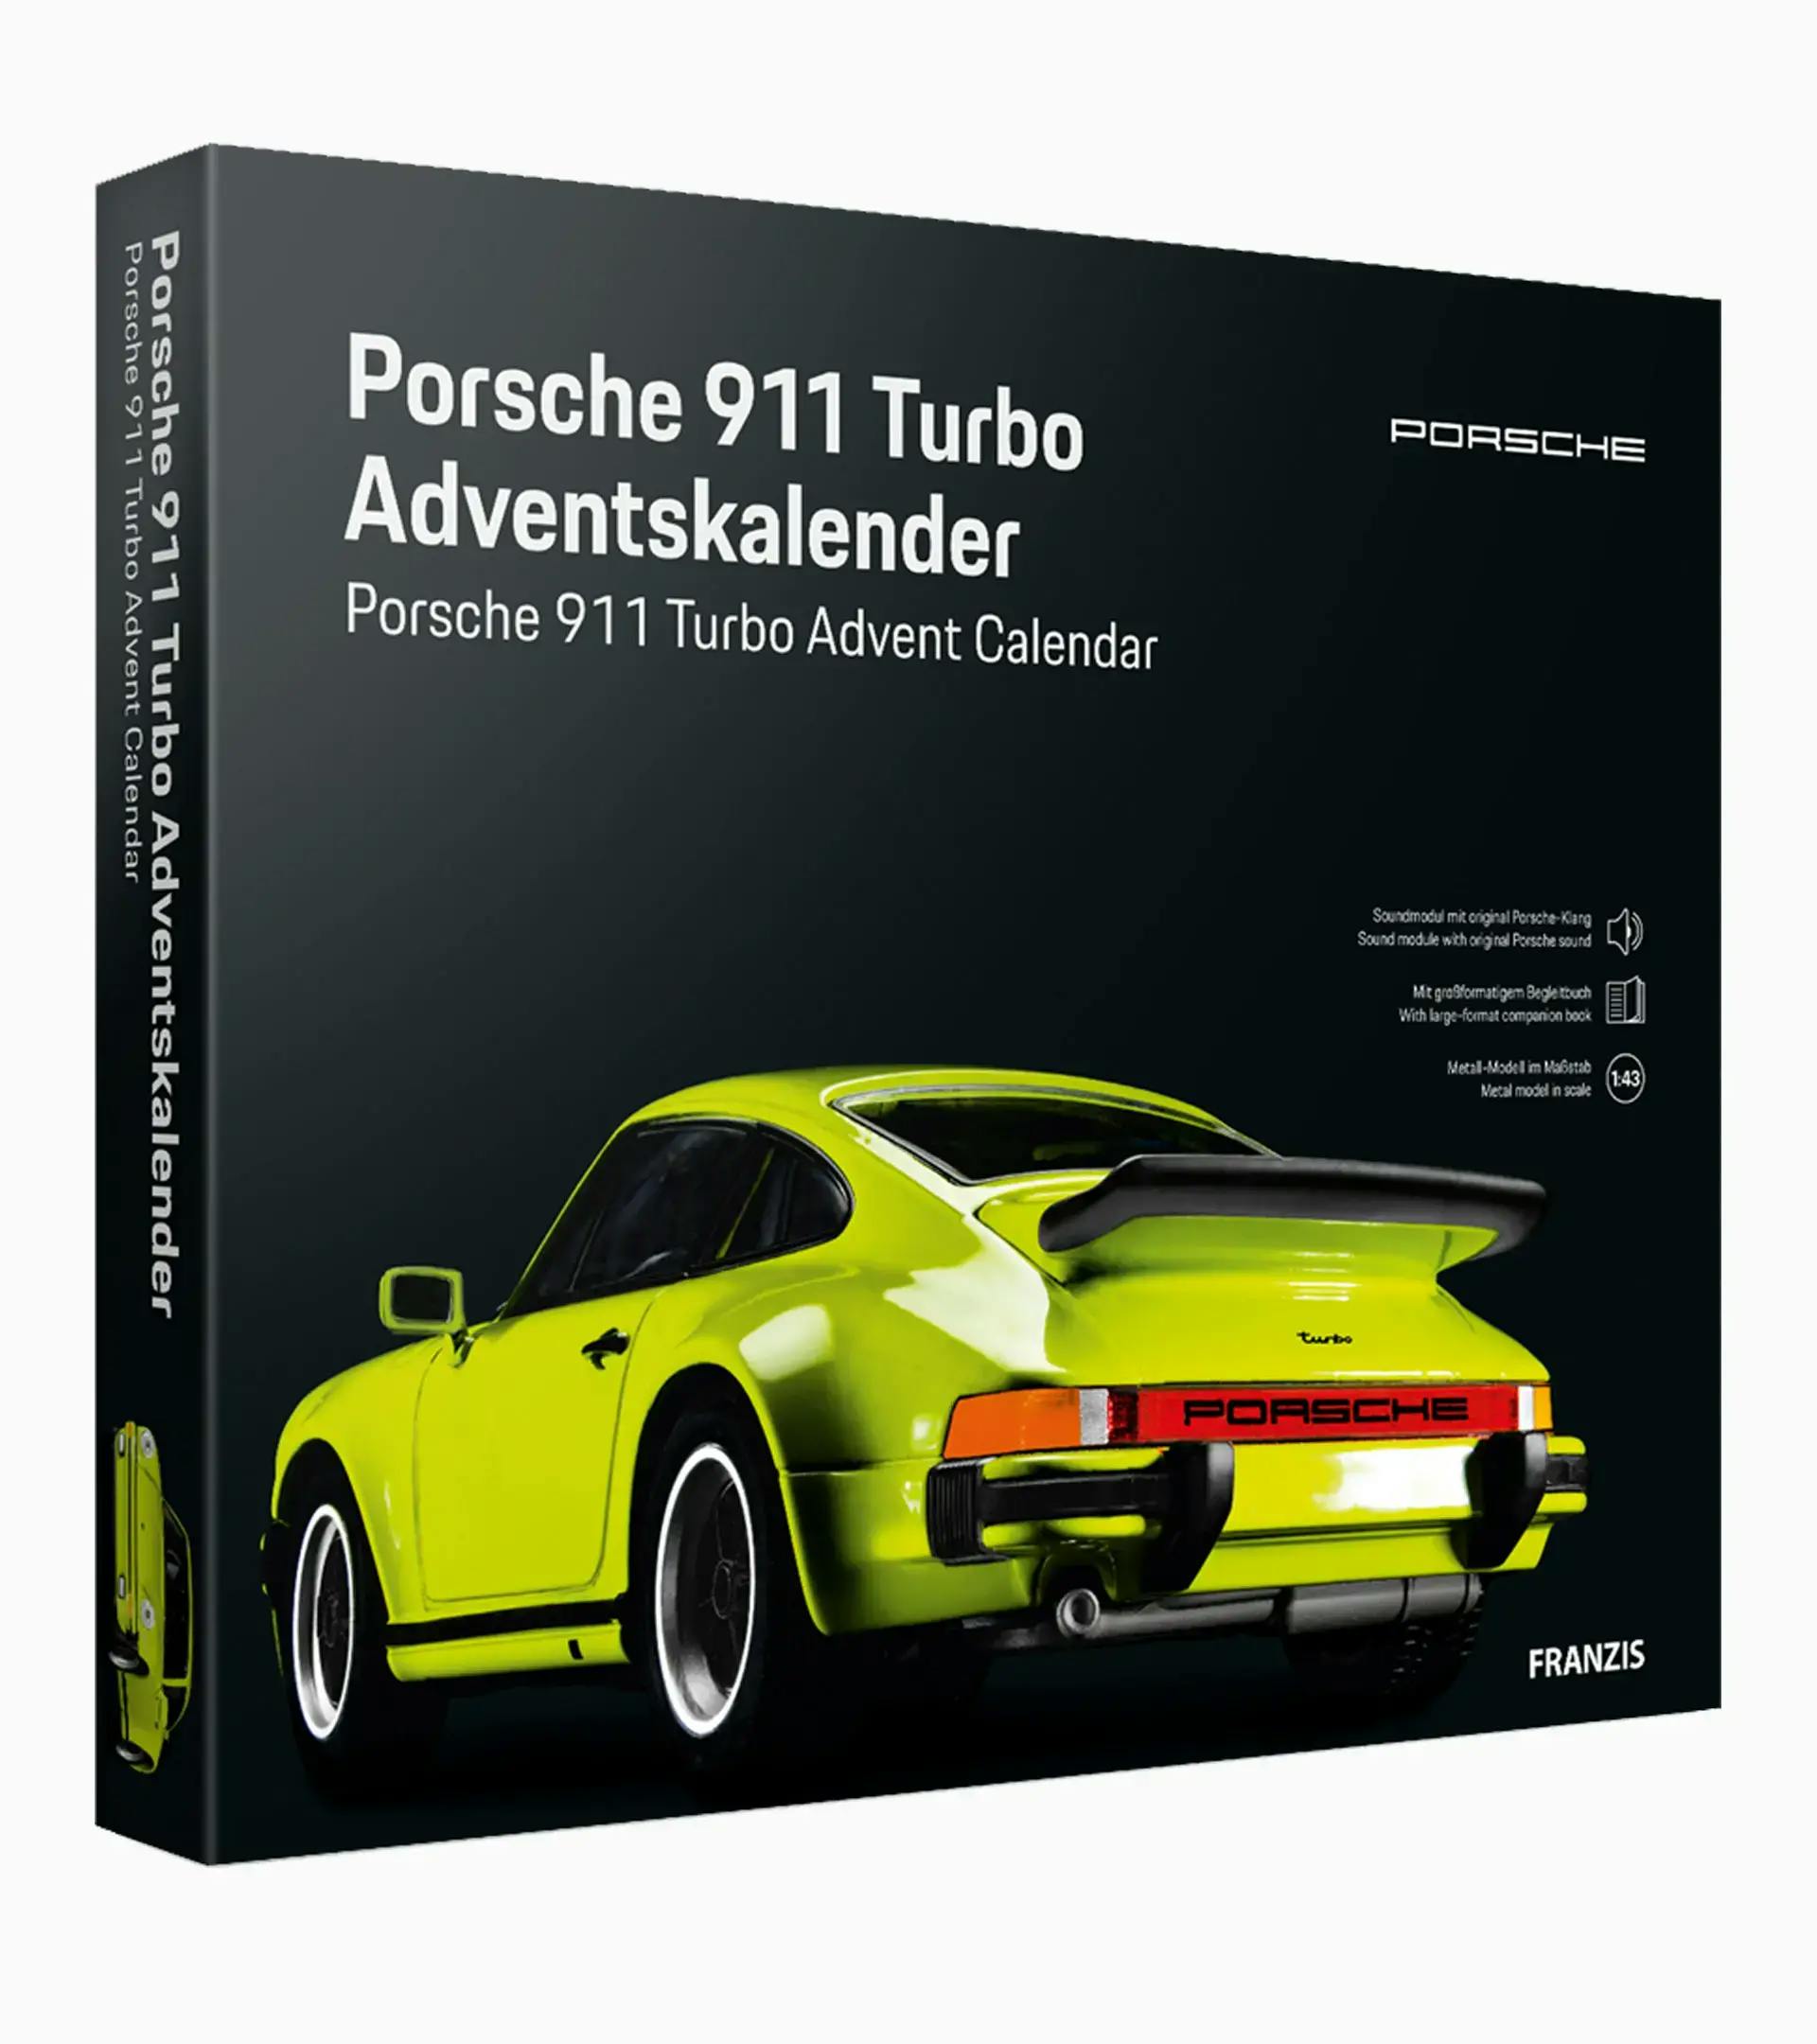 Porsche 911 Turbo Adventskalender 1